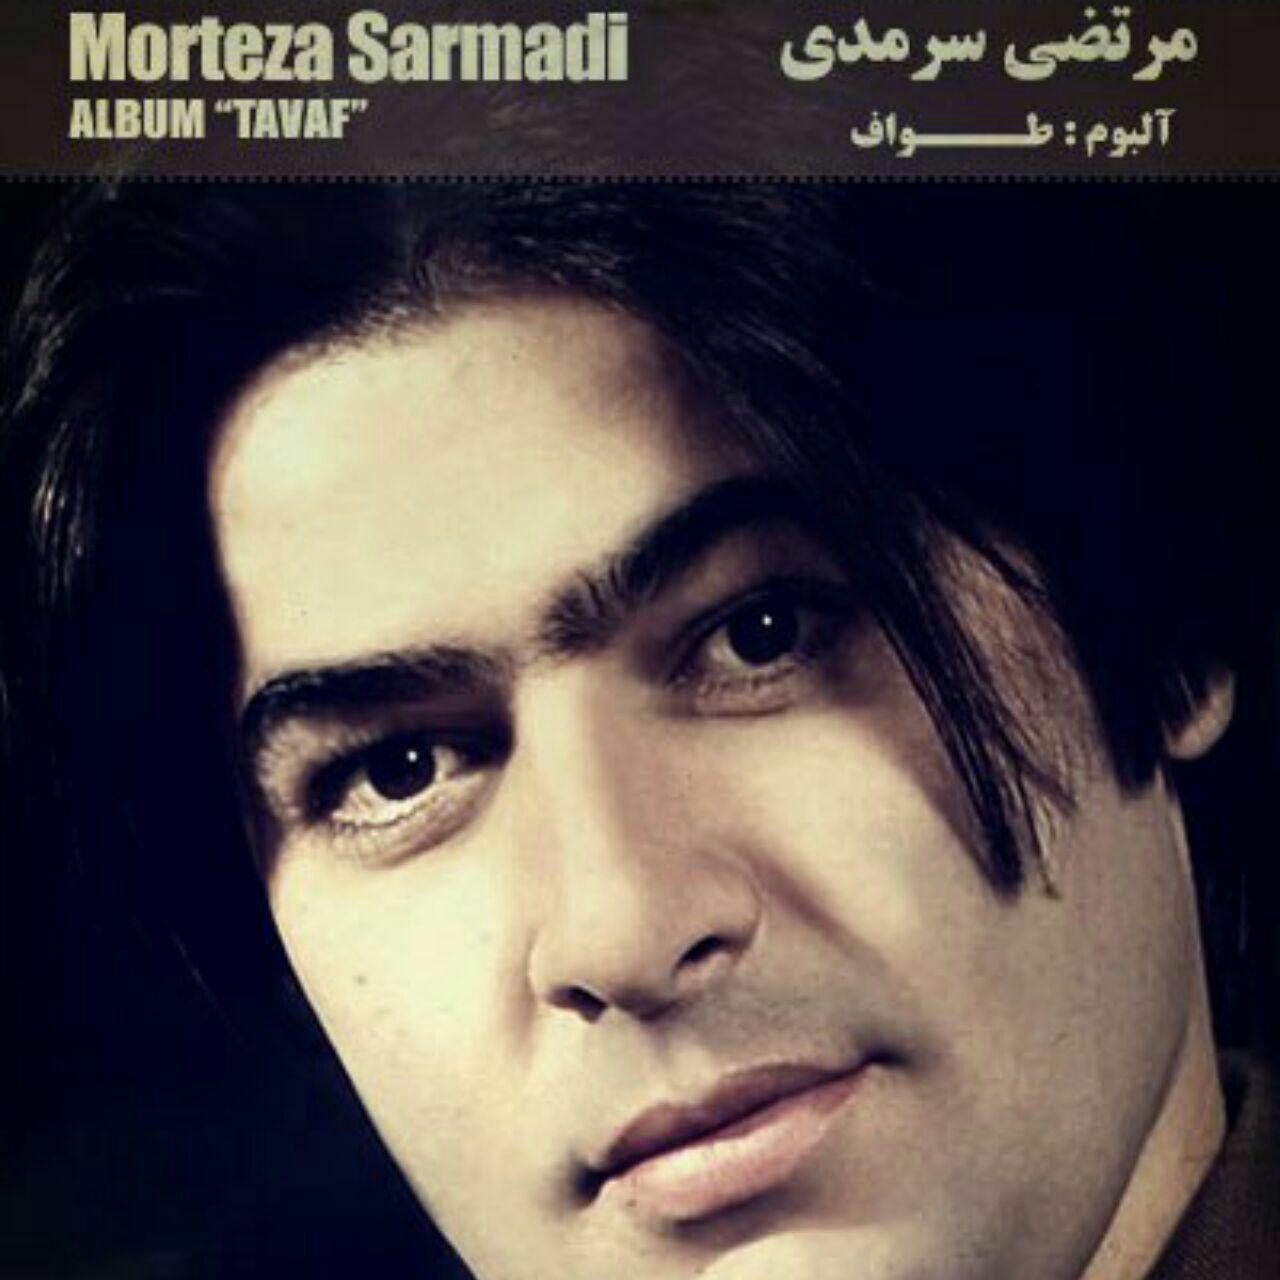  دانلود آهنگ جدید مرتضی سرمدی - گلم | Download New Music By Morteza Sarmadi - Golam